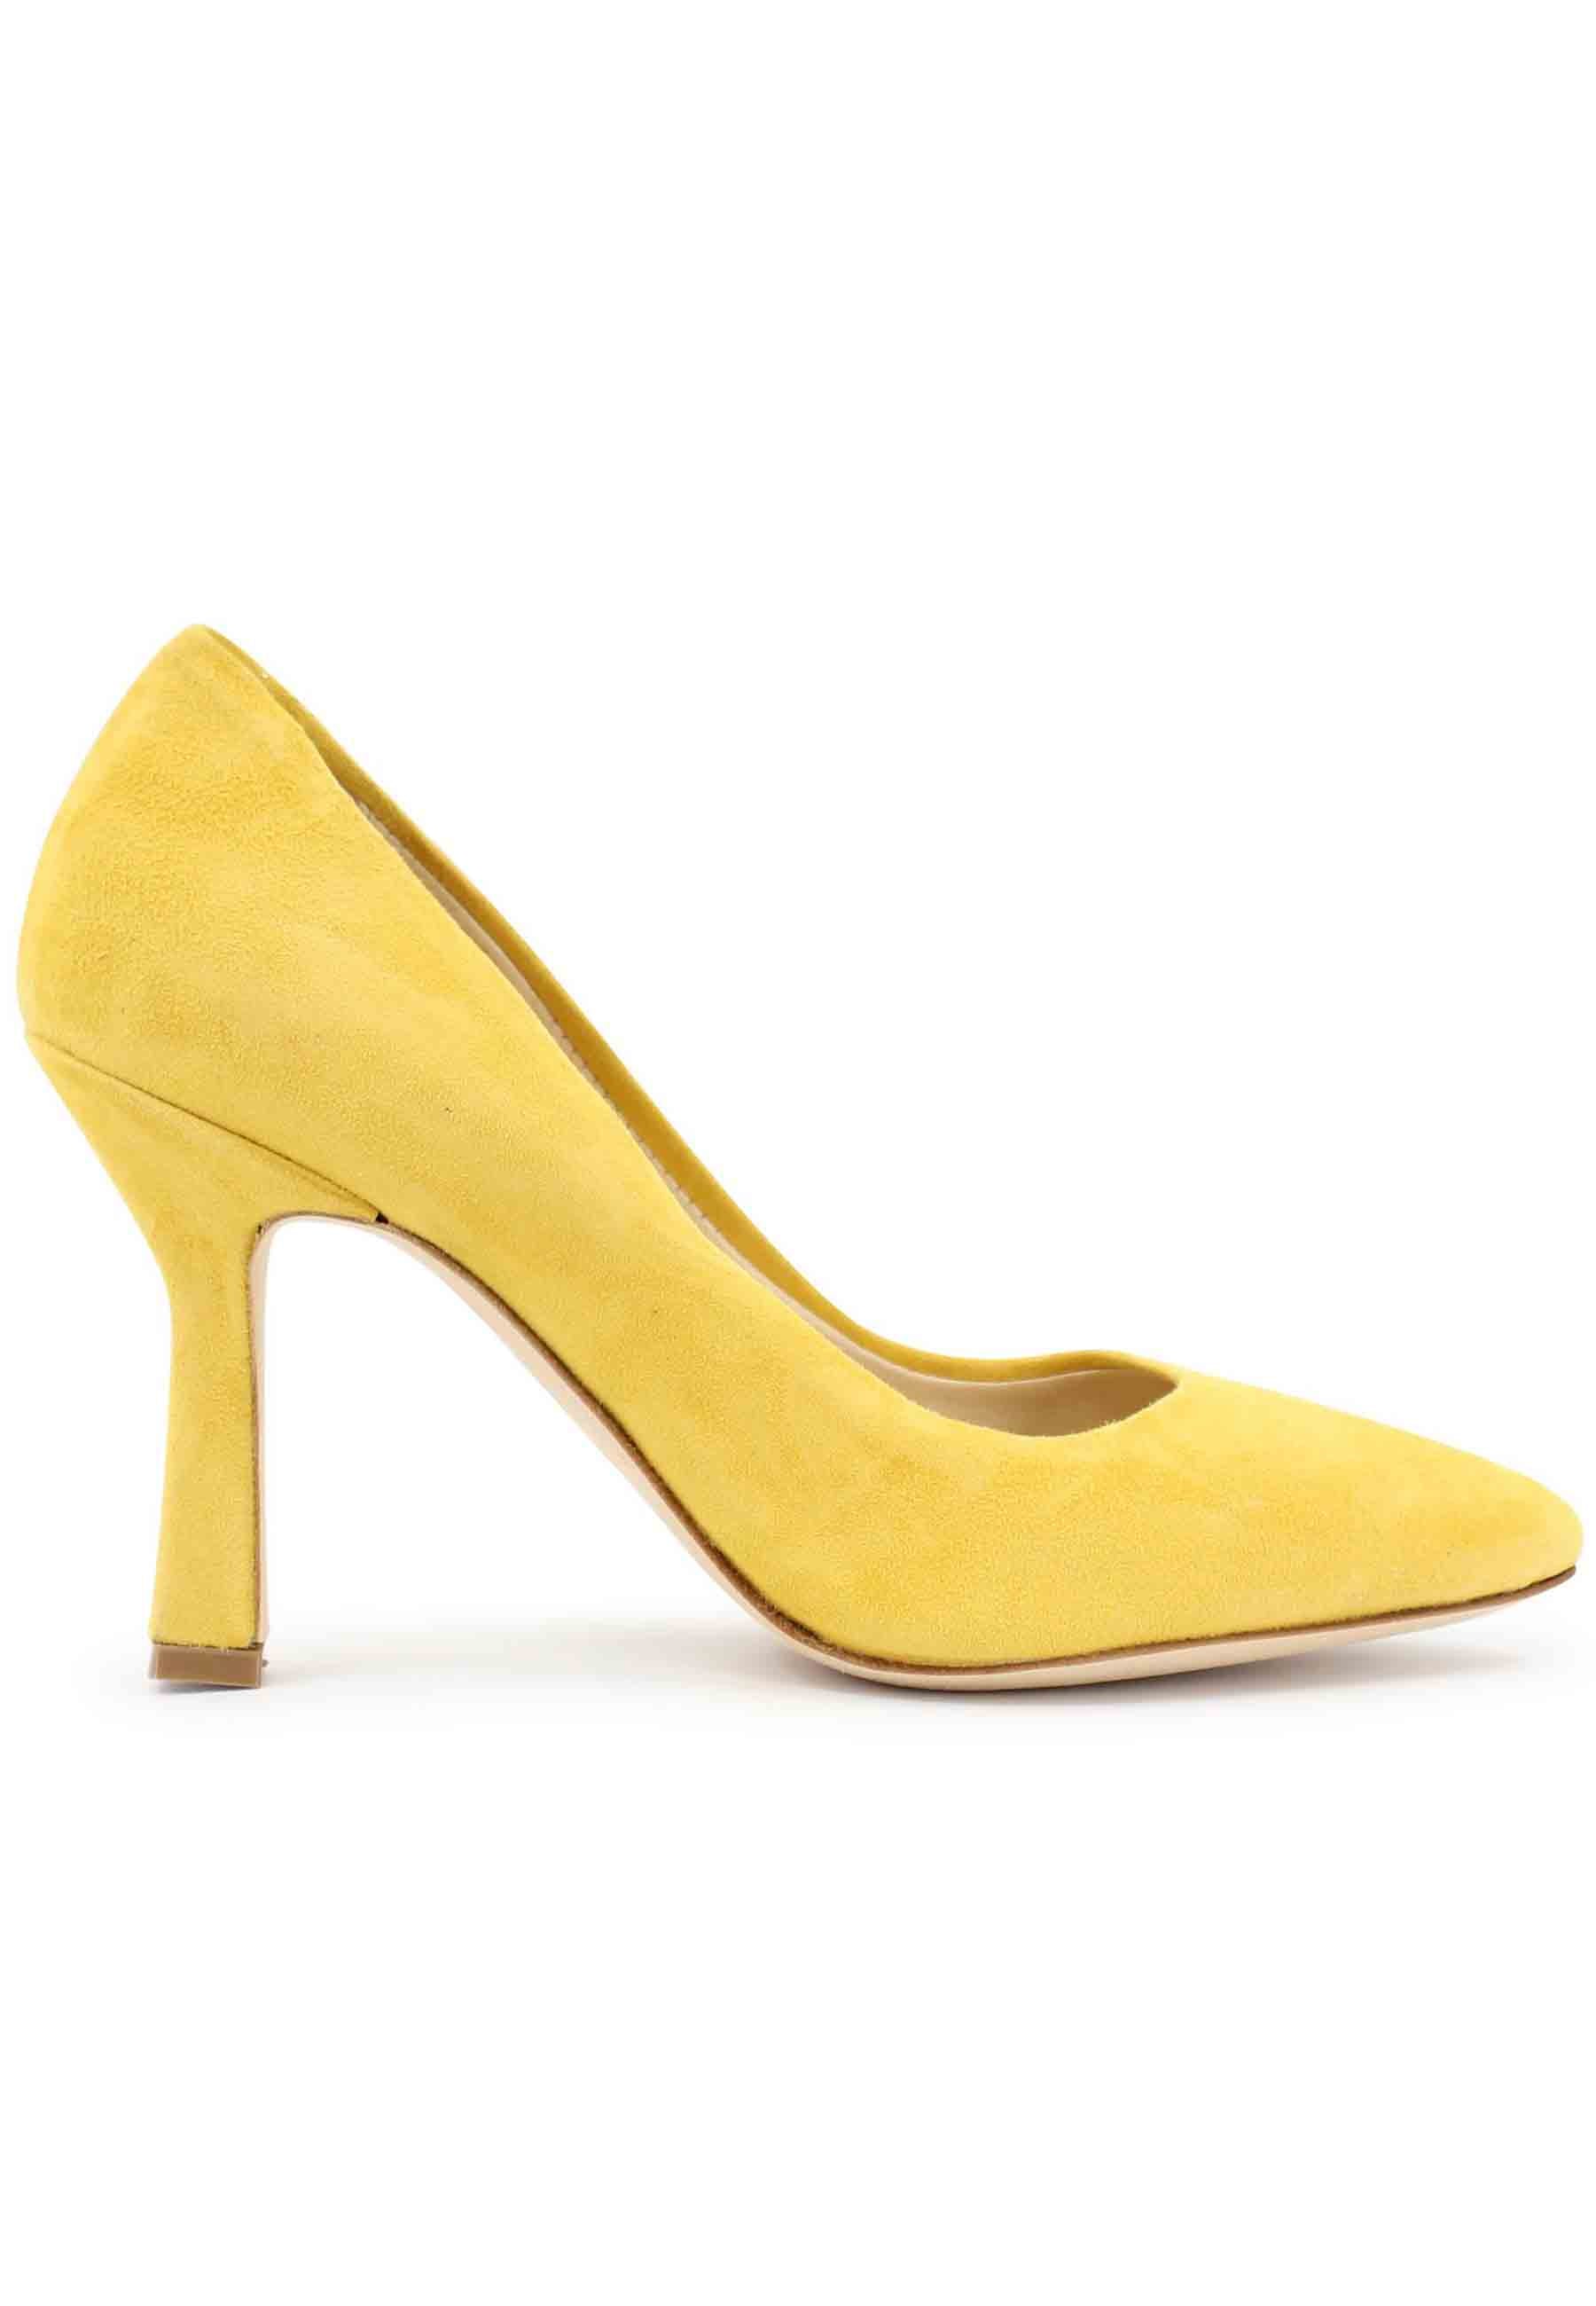 DE1002/RT women's pumps in yellow suede with high heel